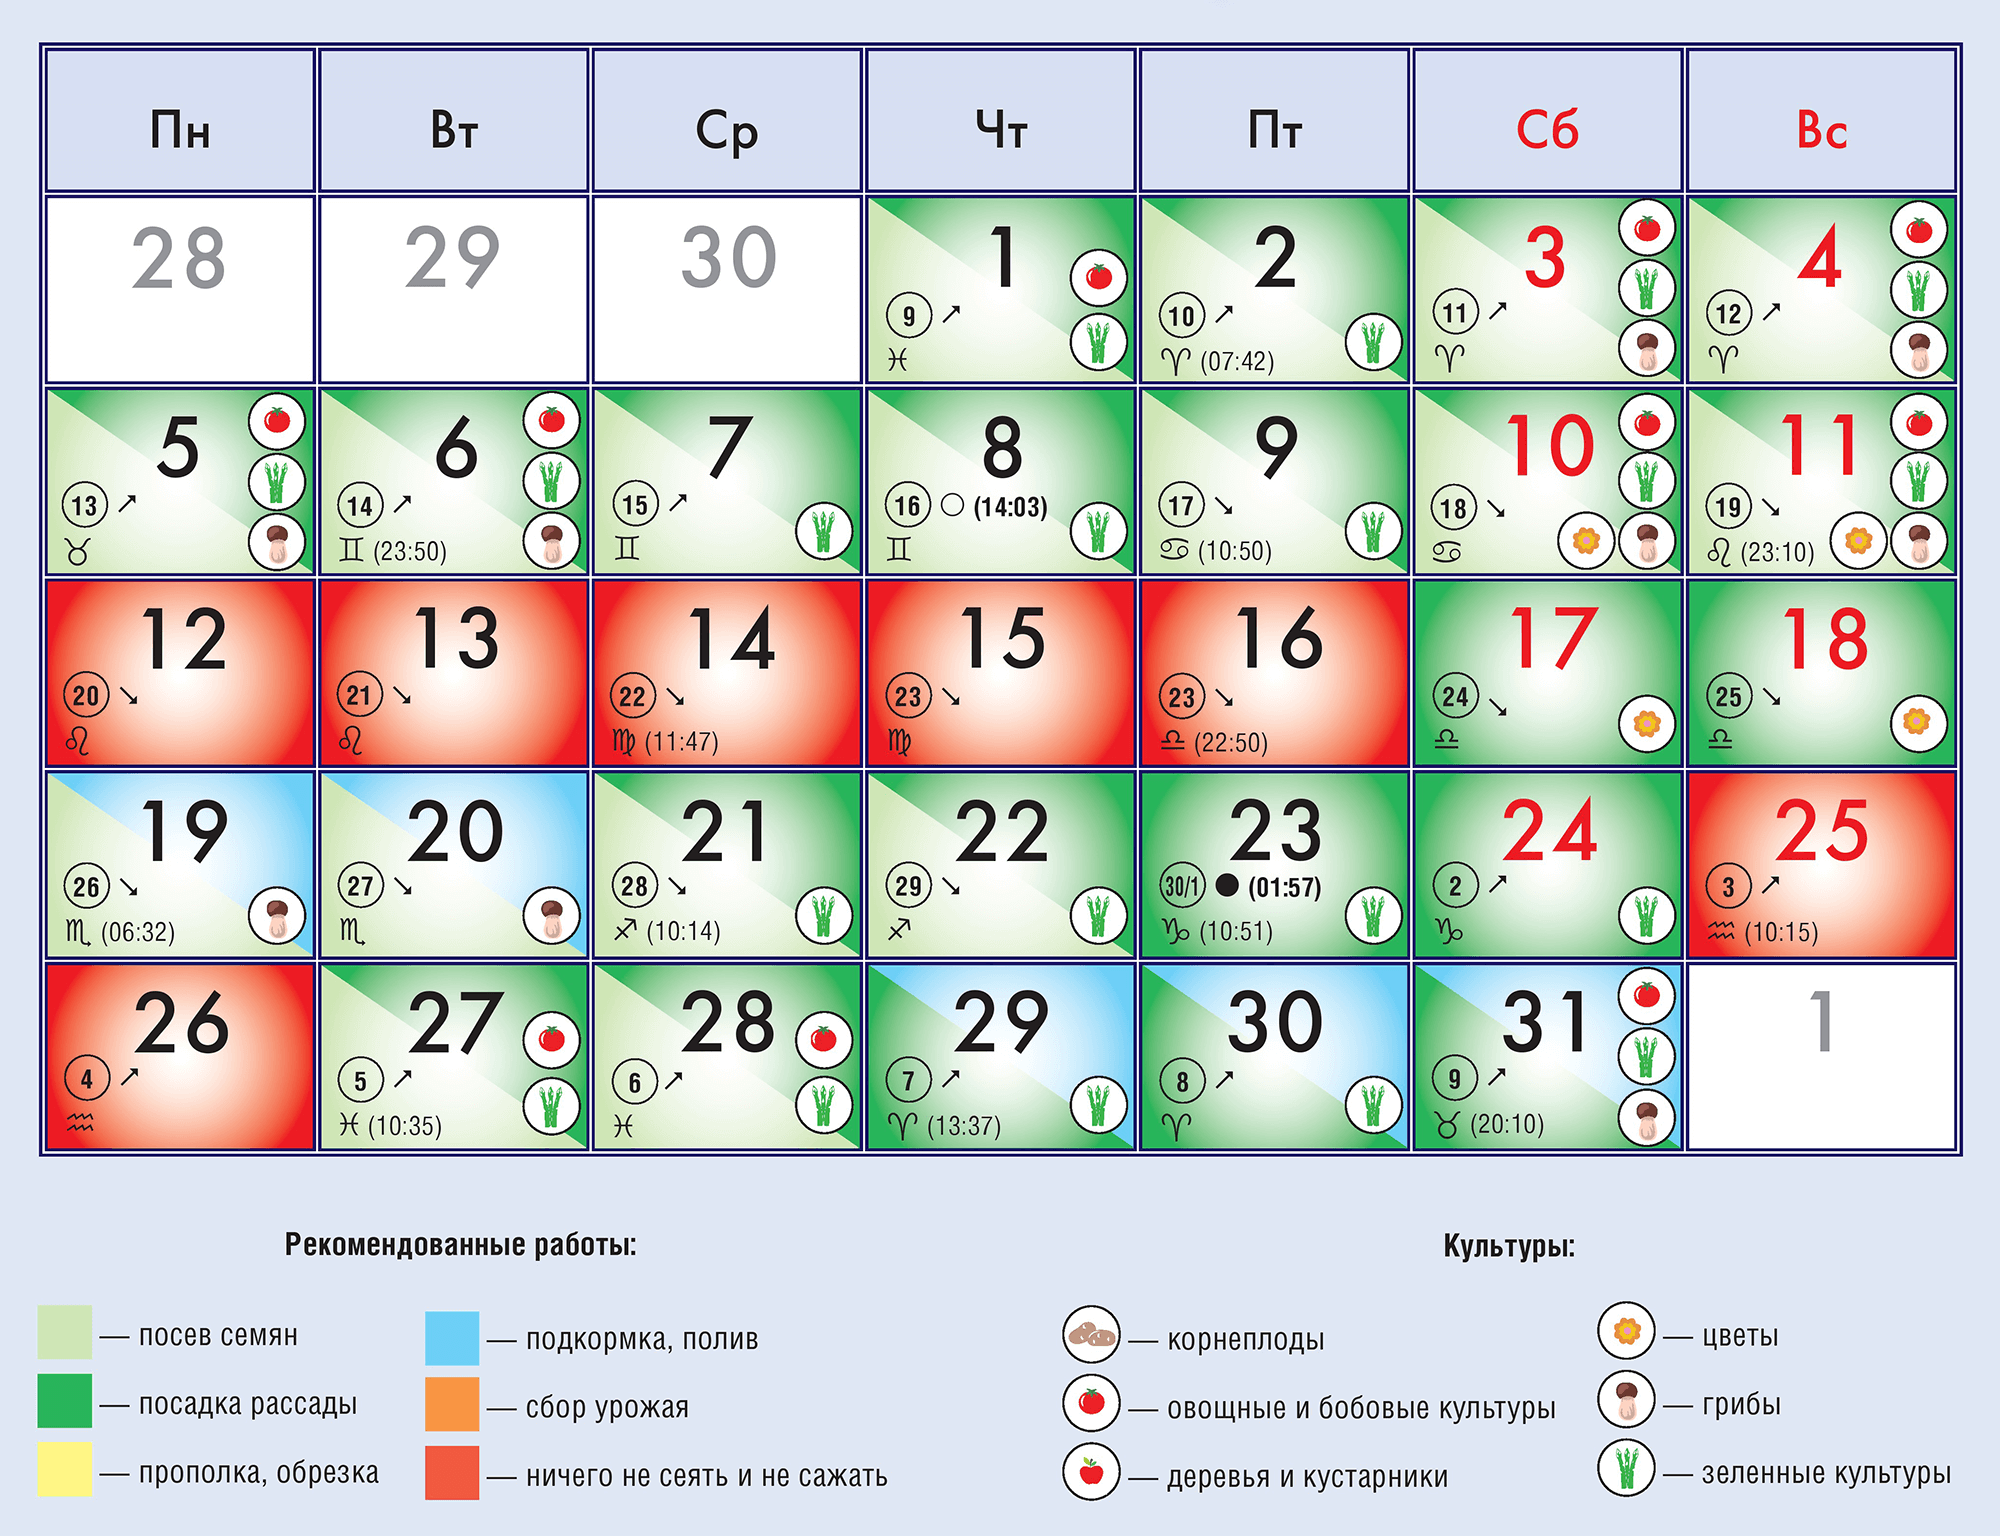 Посадка и пересадка фиалок в 2021 году по лунному календарю: благоприятные дни, уход